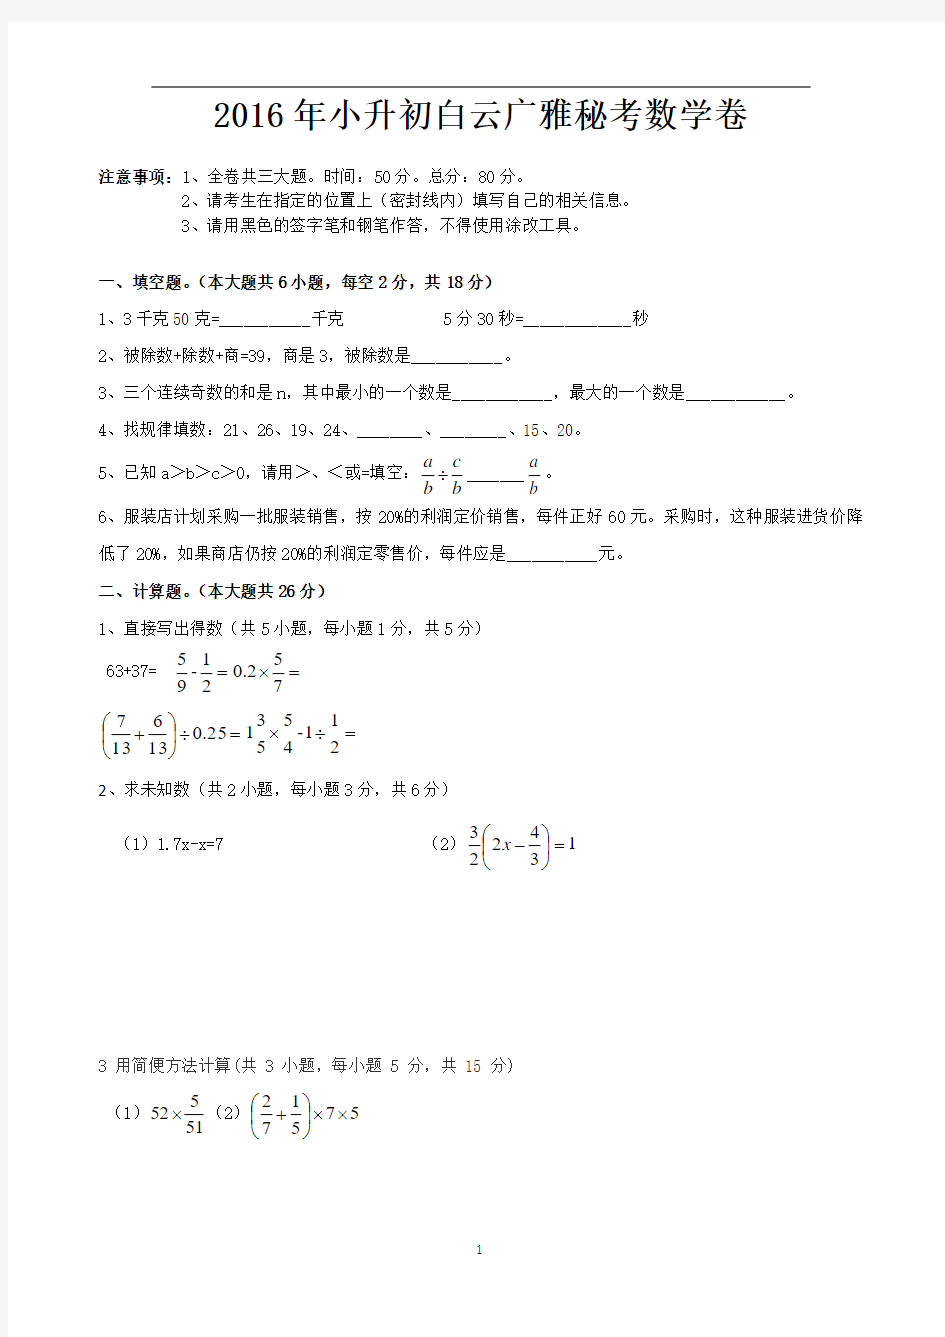 2016年小升初白云广雅秘考数学卷(学生版)